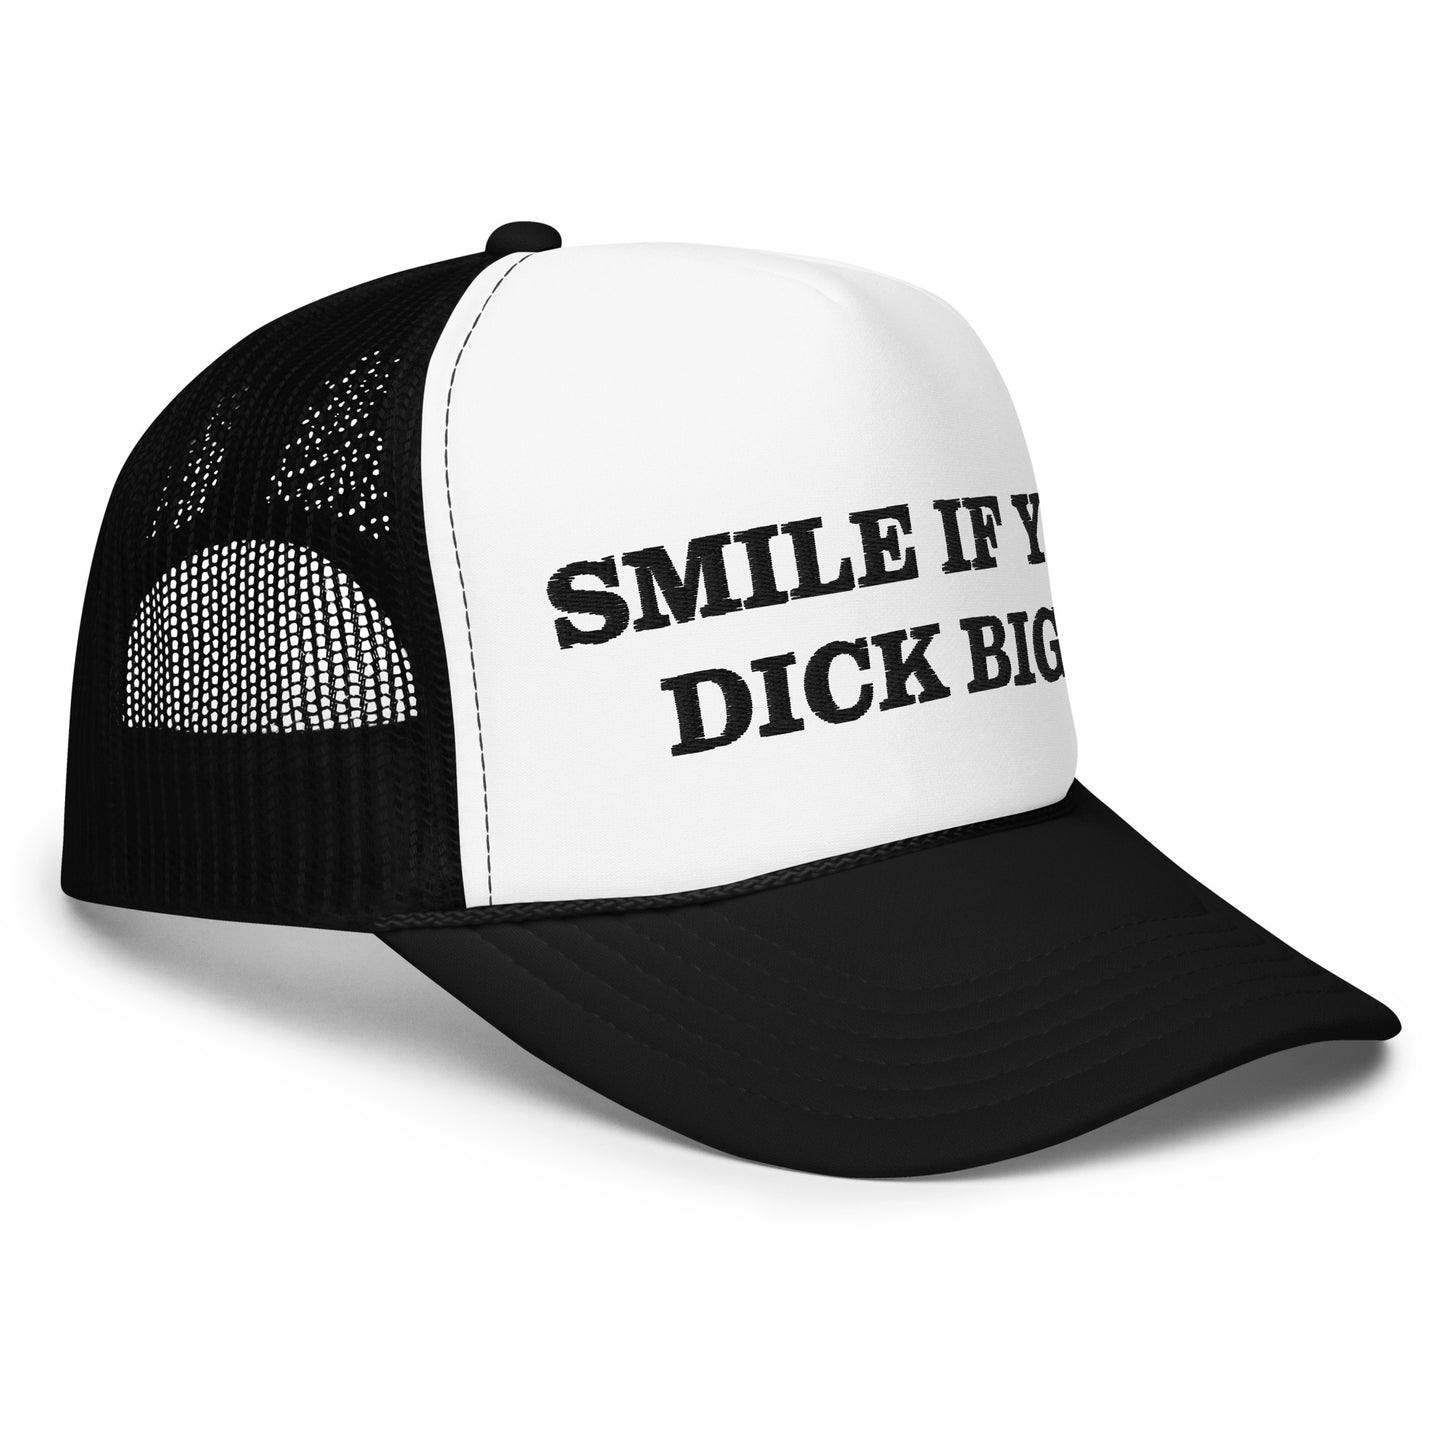 if yo dick big hat